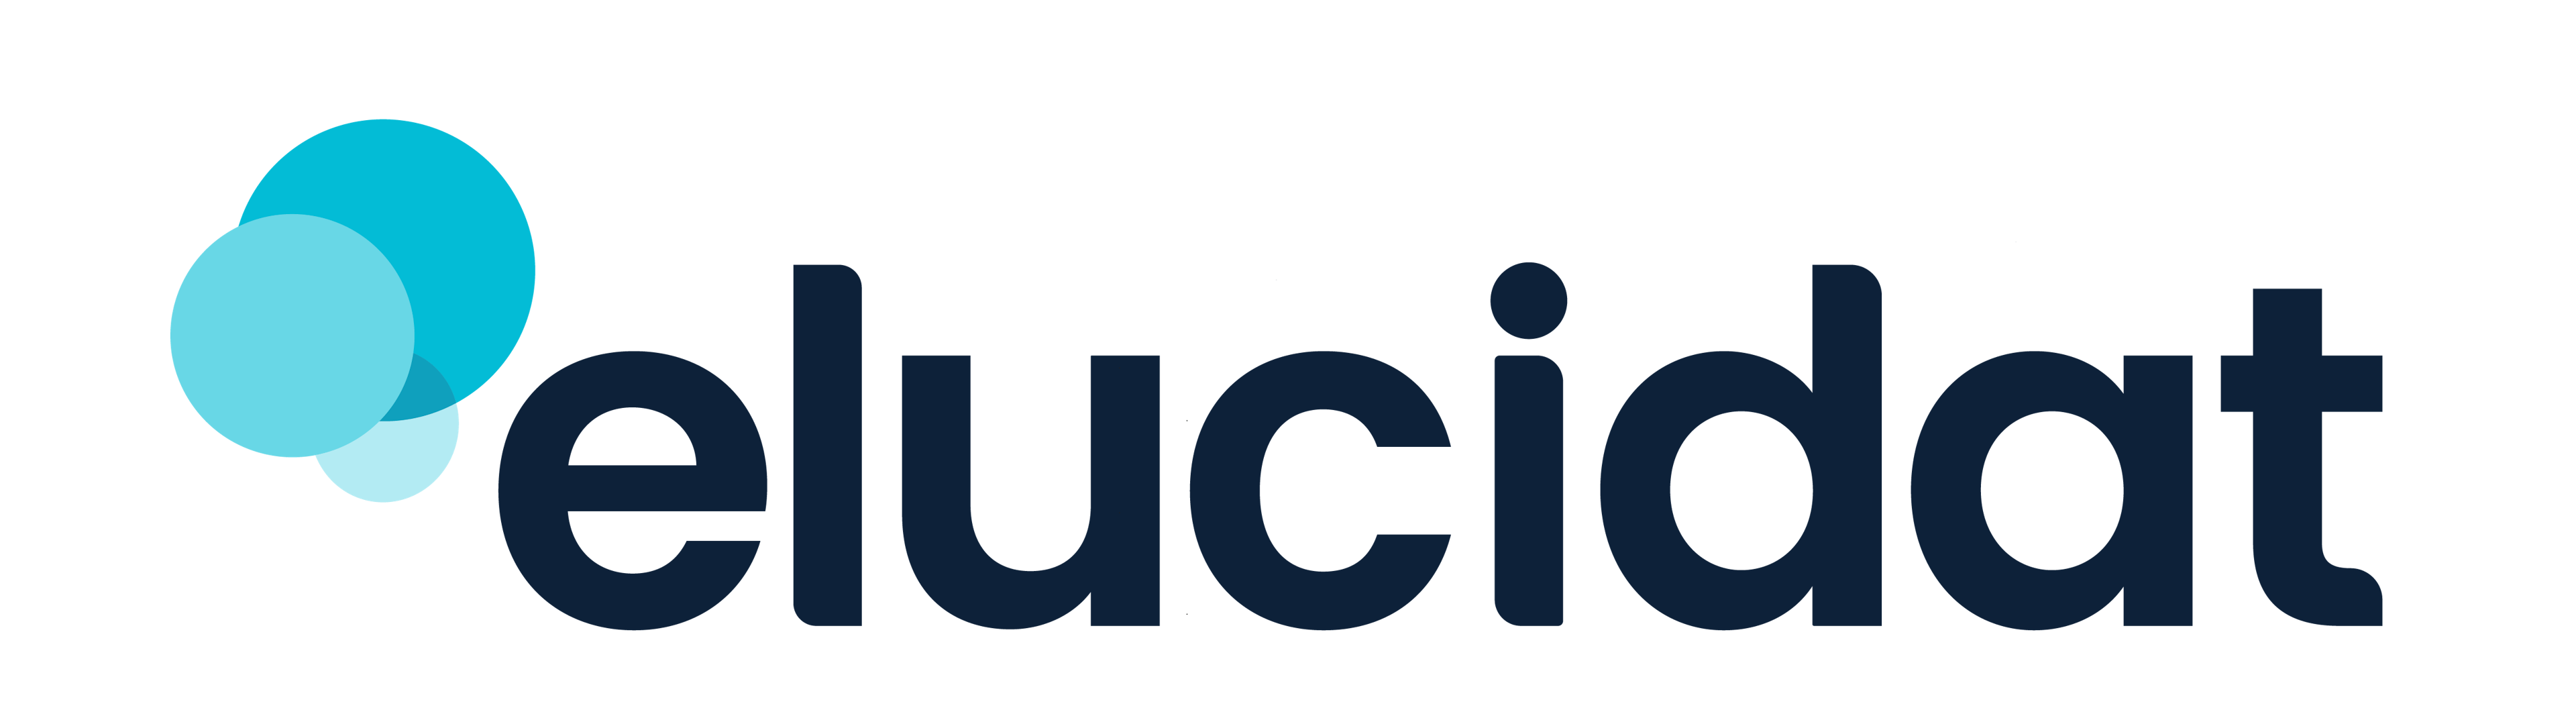 Elucidat Logo